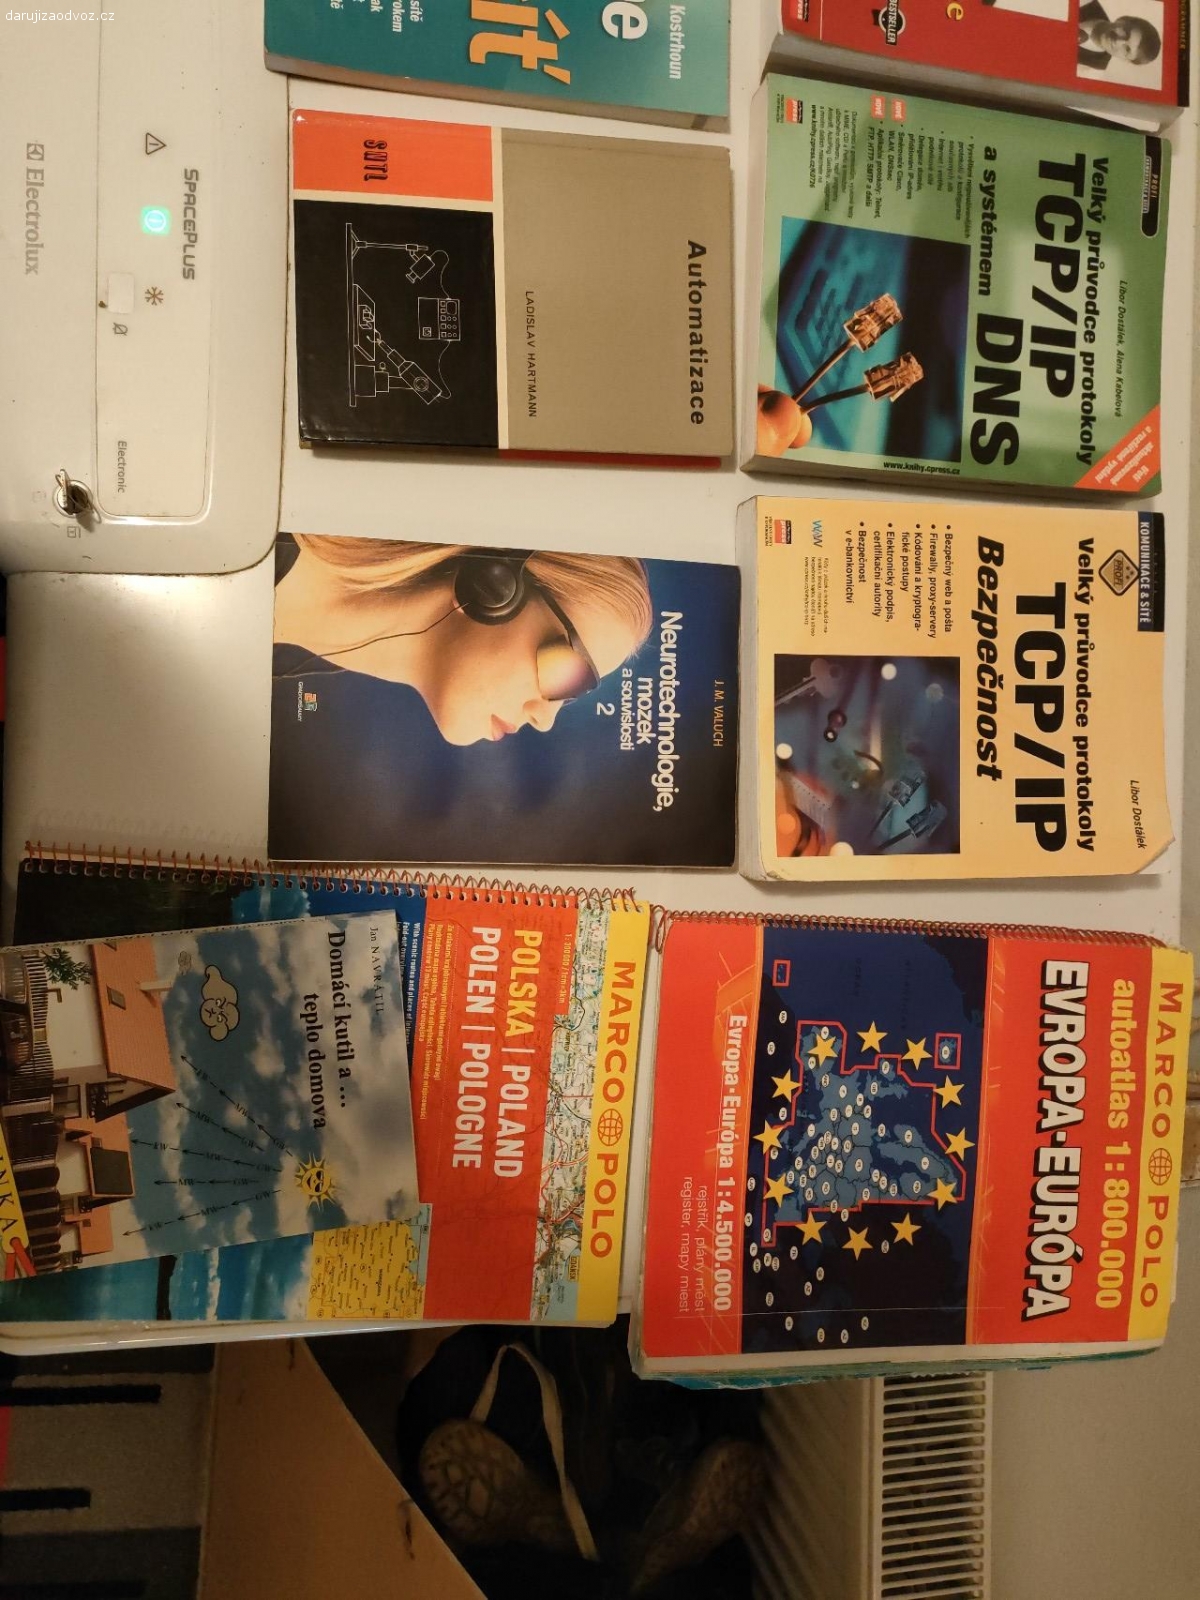 Technická literatura + mapy. Knihy z let cca 2000. Viz foto. K odběru i jednotlivě.